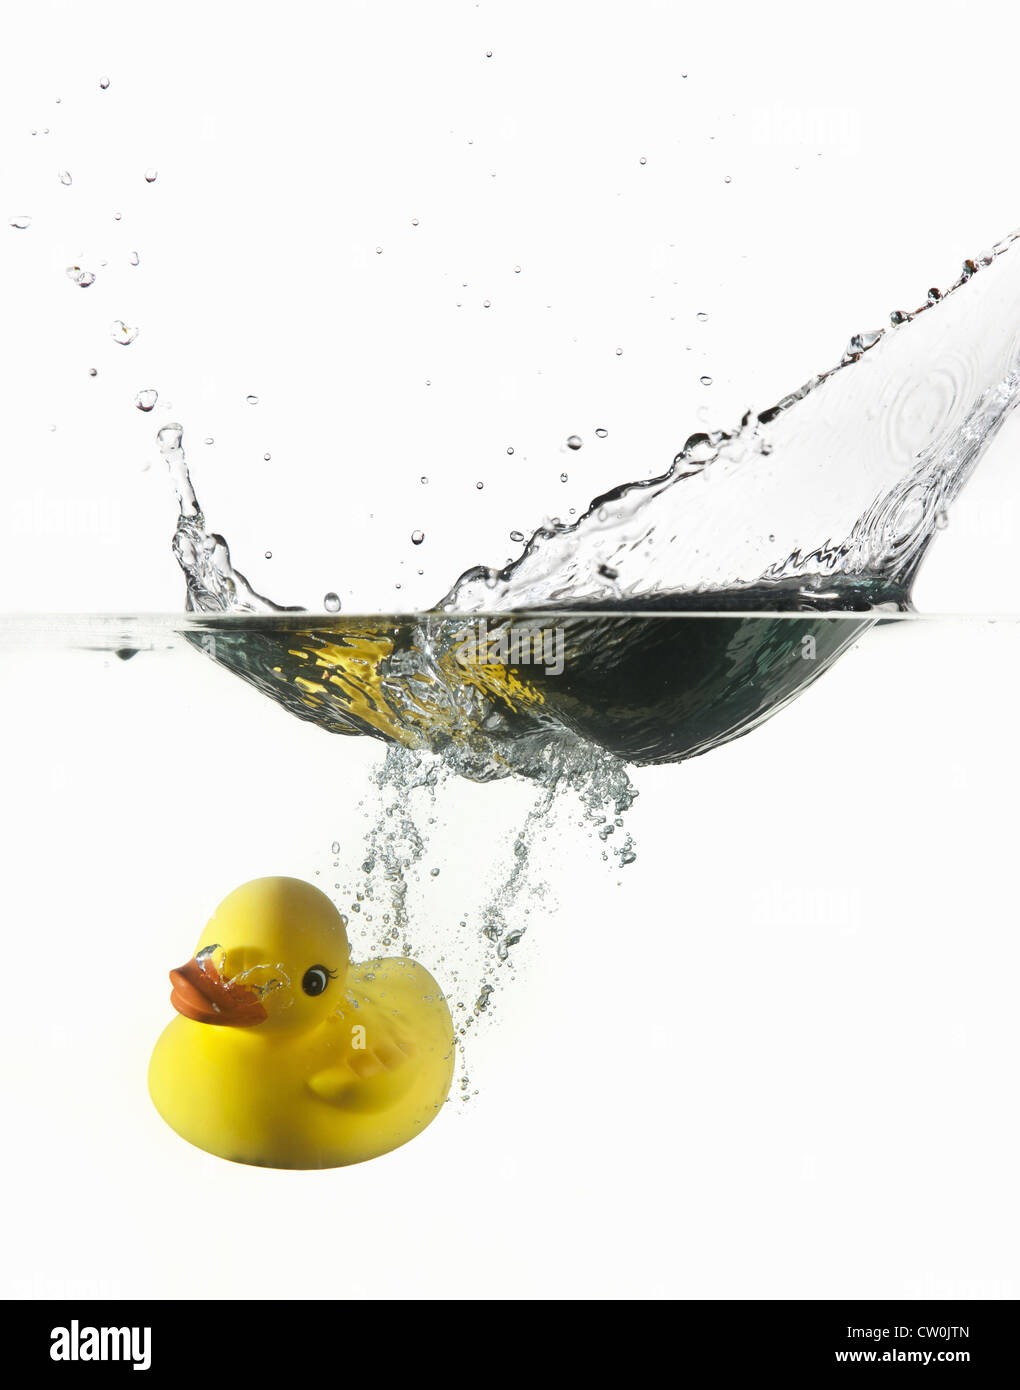 Canard en caoutchouc plonger dans l'eau Banque D'Images